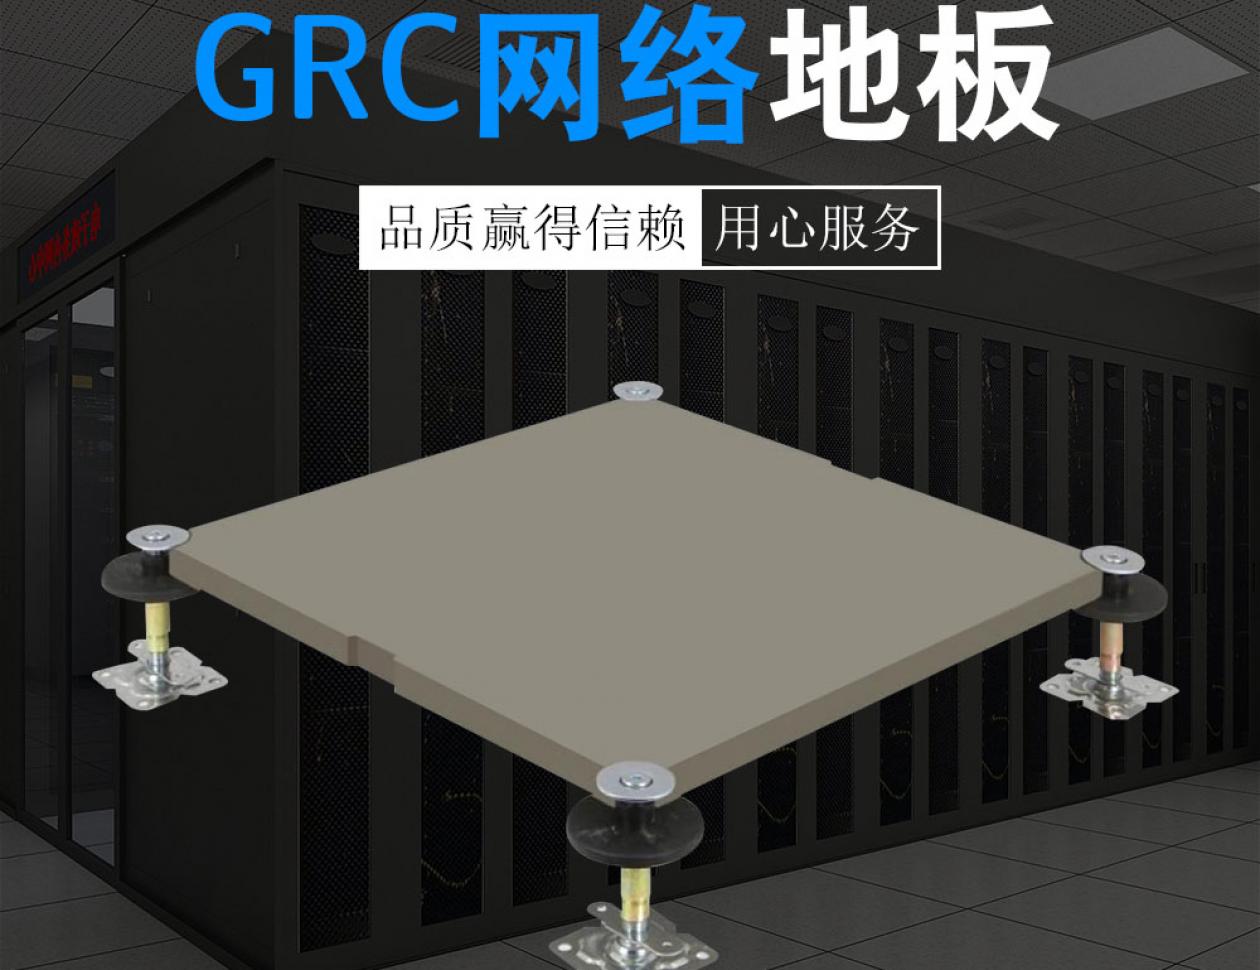 GRC网络地板